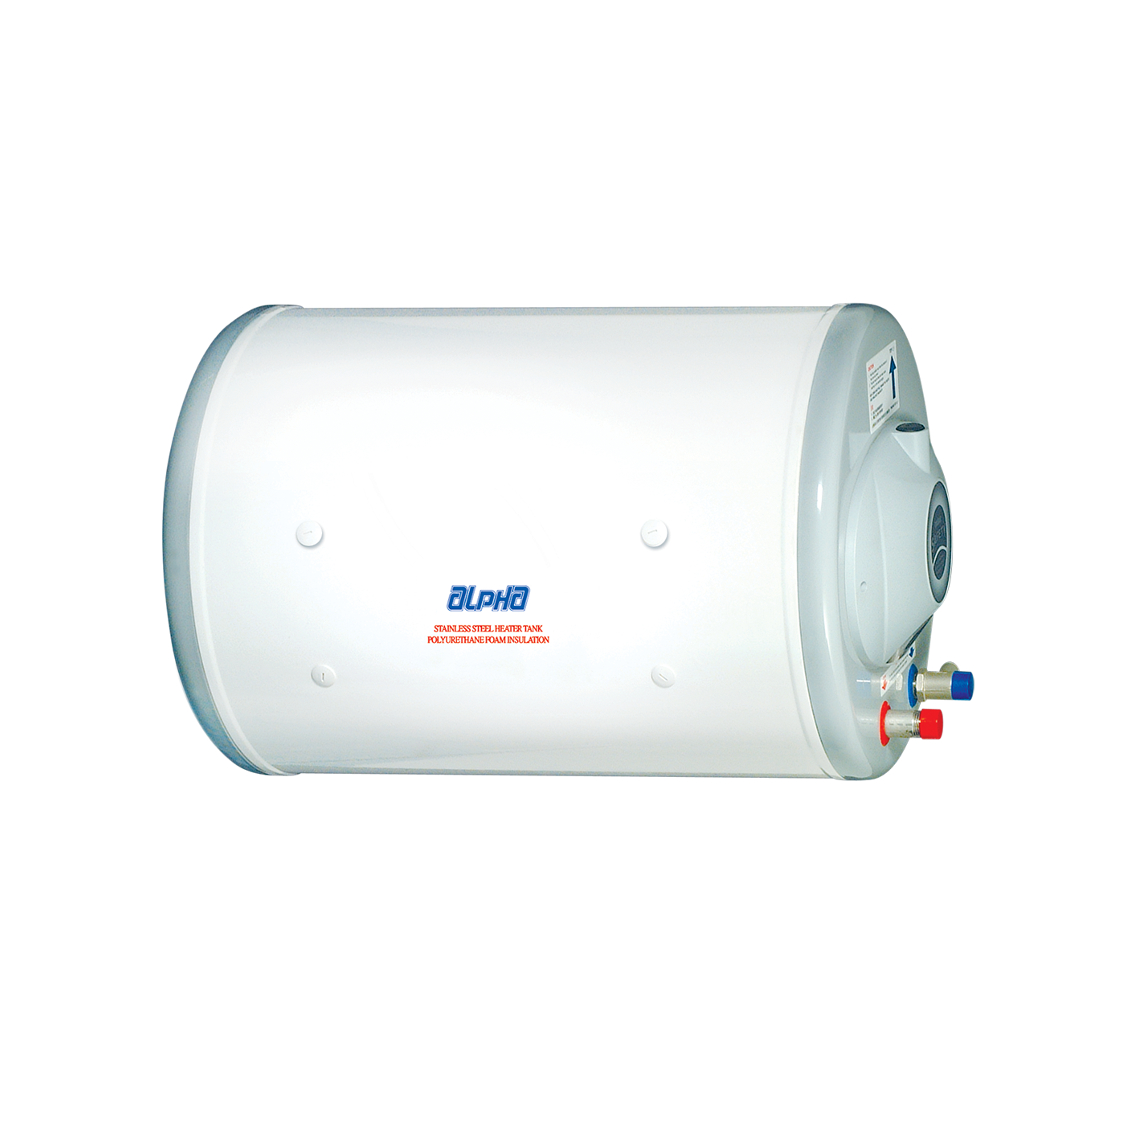 ALPHA - ALP 35L-H 35L Horizontal Storage Water Heater